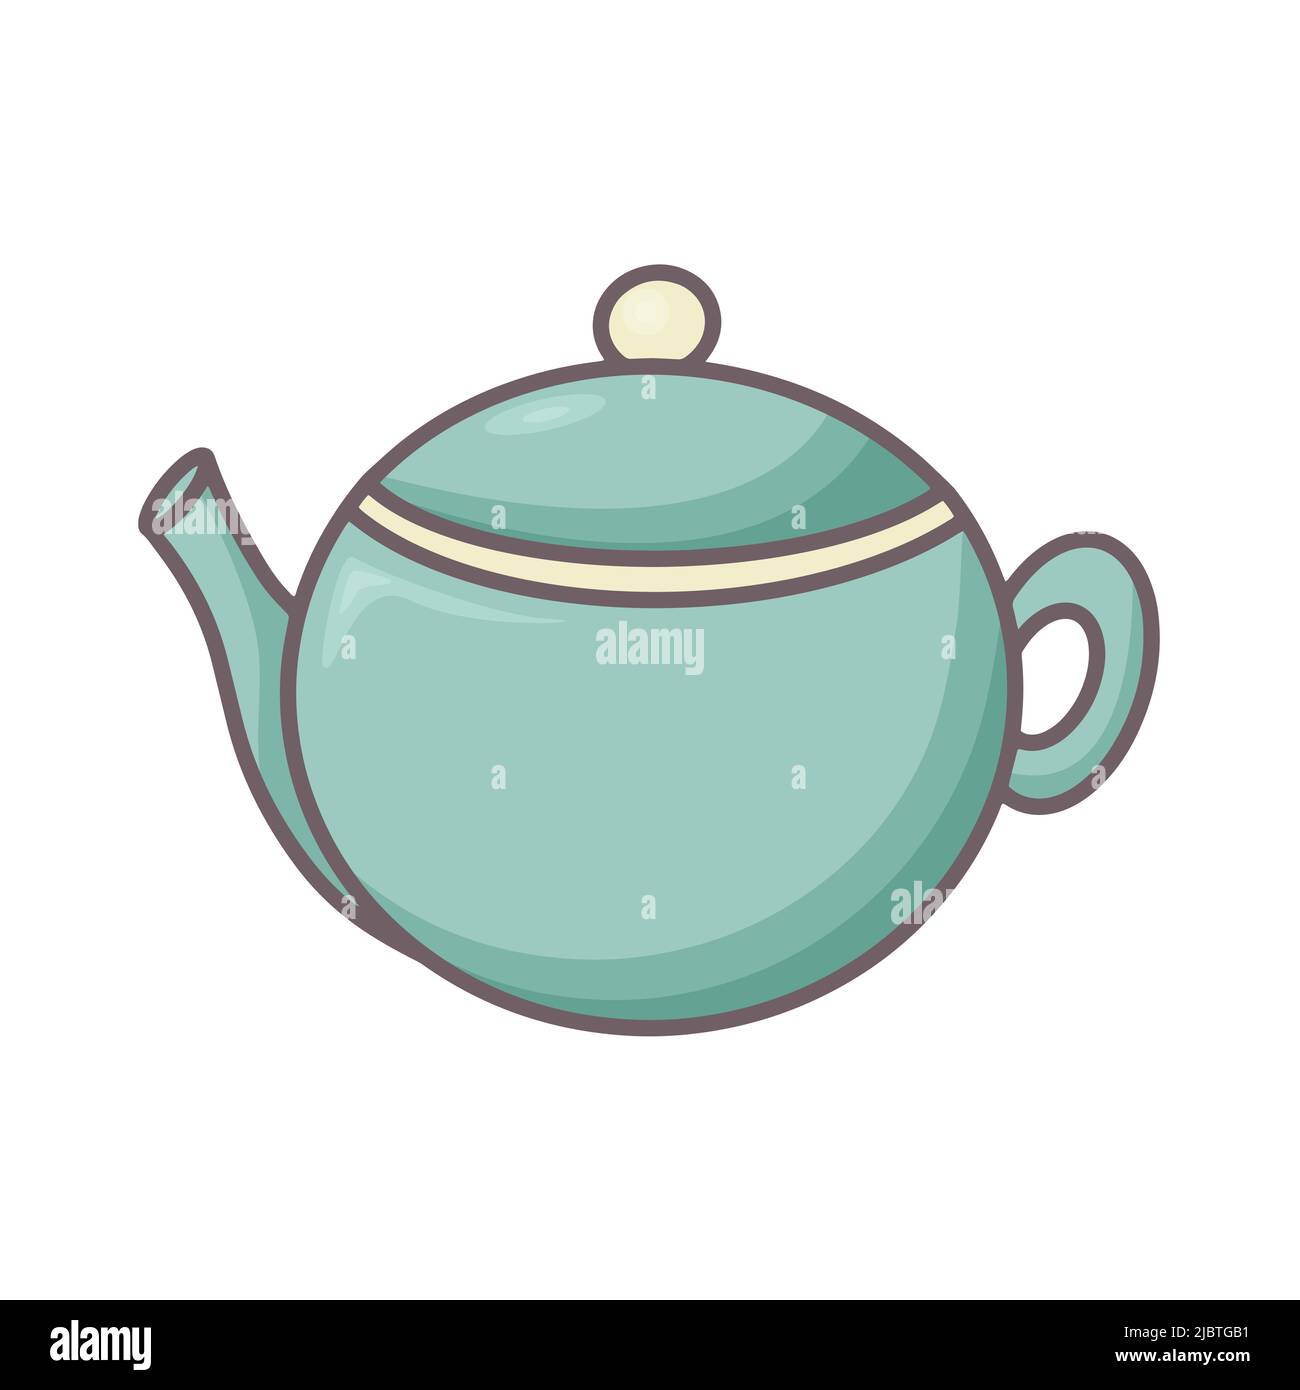 Keramik oder Ton Teekannen Doodle Stil Vektorgrafik. Farblich isoliertes Symbol für das Kettle Clipart. Gerichte zum Brühen von Tee oder Heißgetränken. Gemütliche, hausgemachte Pause Stock Vektor